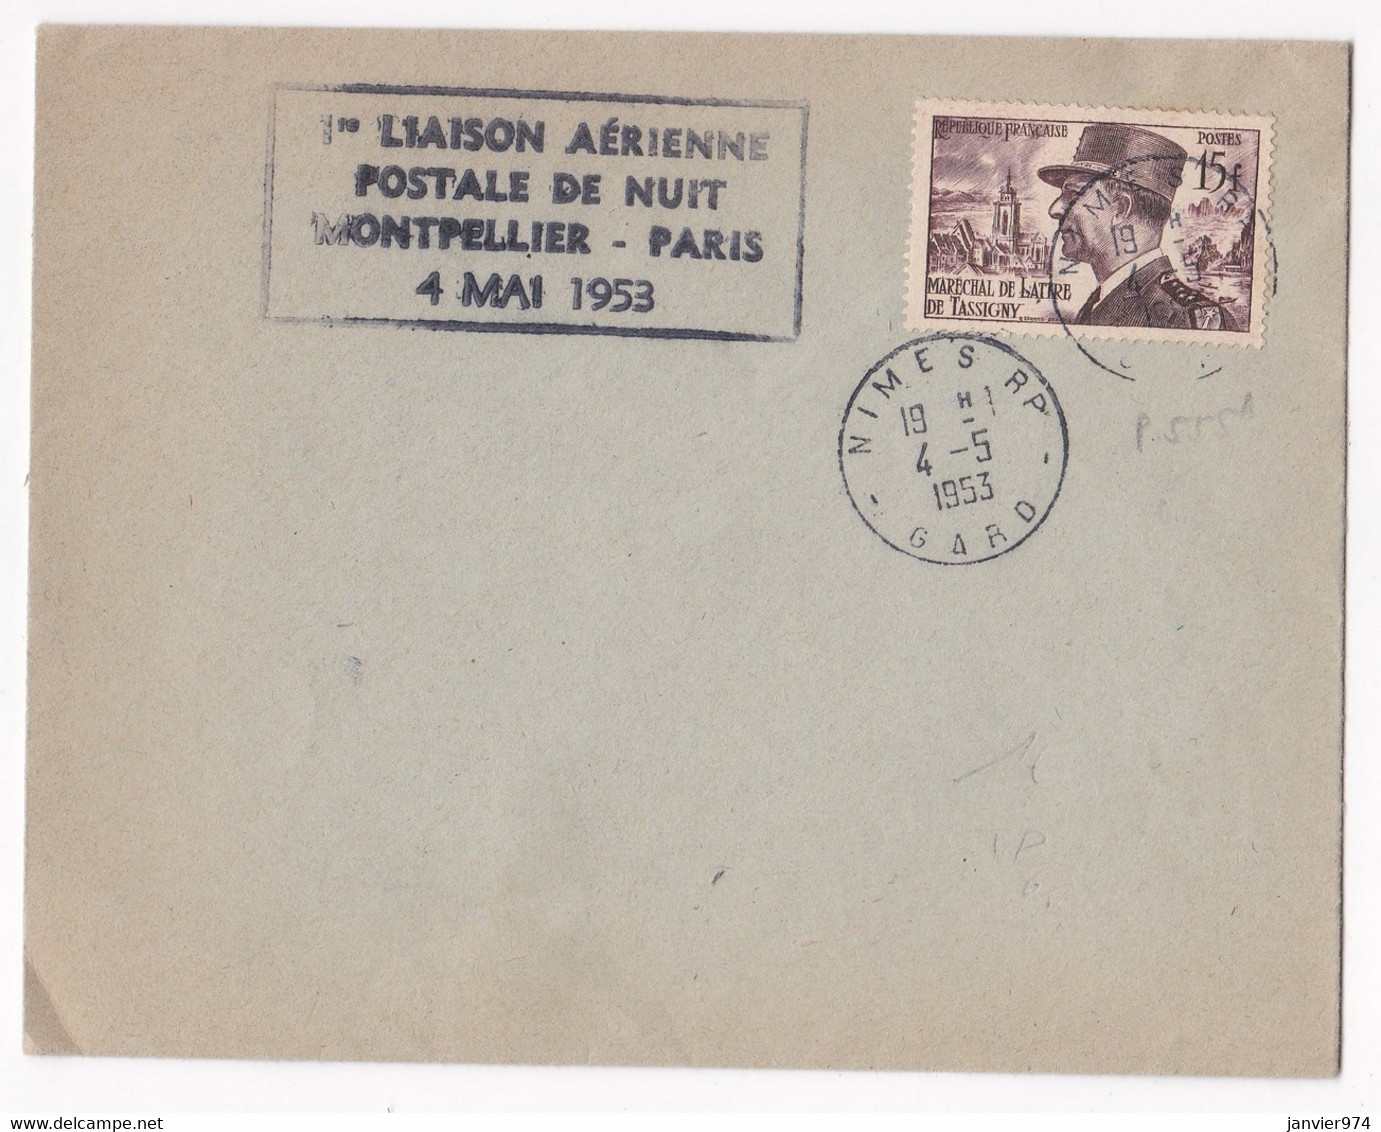 Enveloppe 1953, 1er Liaison Aérienne Postale De Nuit Montpellier Paris . Tampon Nimes. - 1927-1959 Covers & Documents